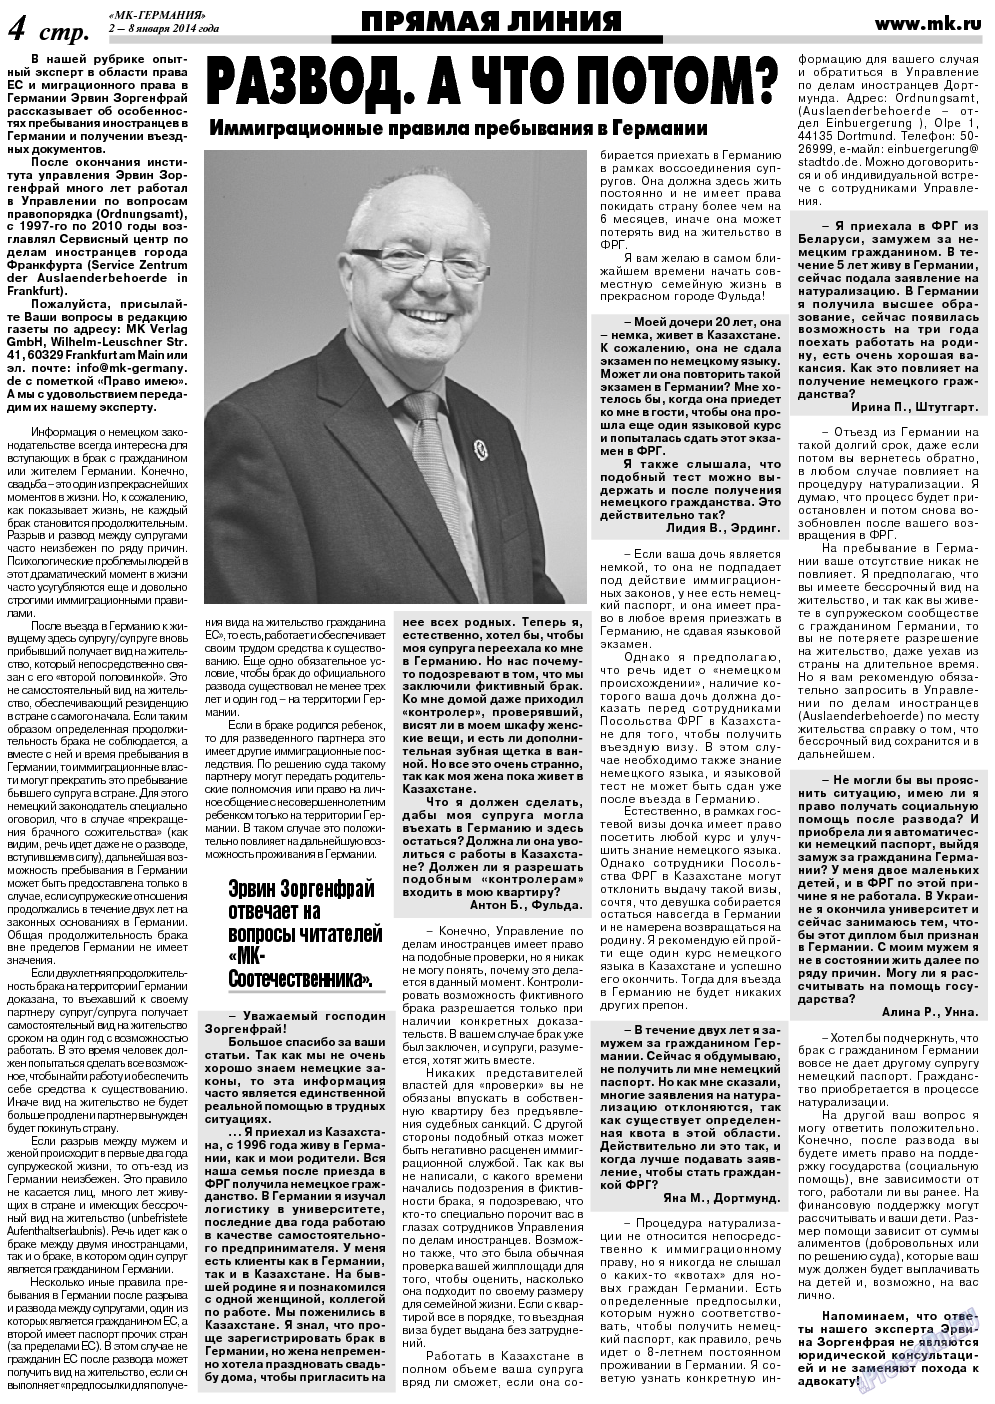 МК-Германия (газета). 2014 год, номер 1, стр. 4